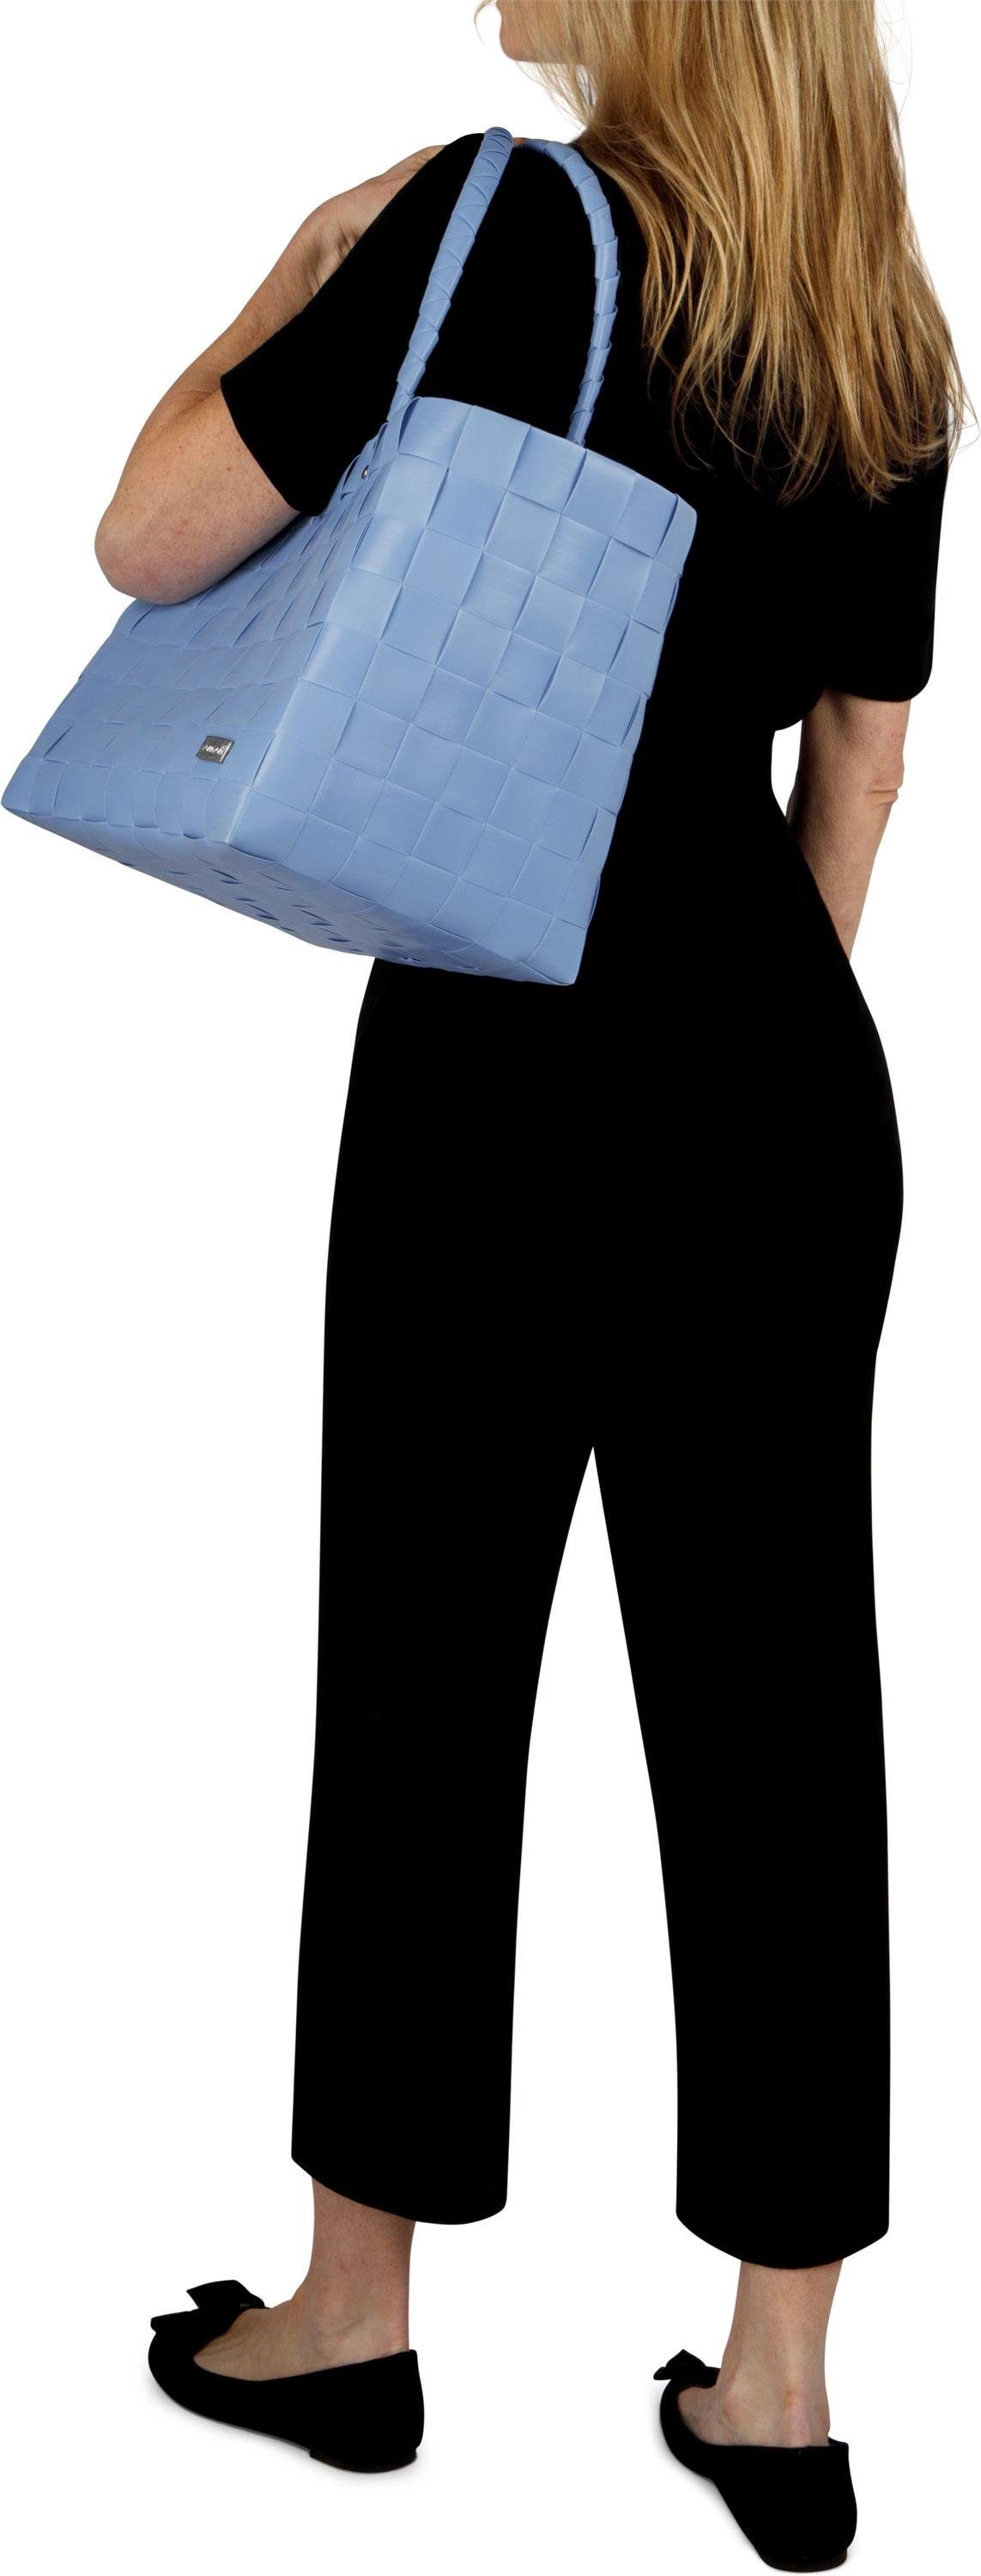 normani Material Light Einkaufstasche Blue aus aus Kunststoff, Flechtkorb l, pflegeleichtem 20 Einkaufskorb Einkaufskorb